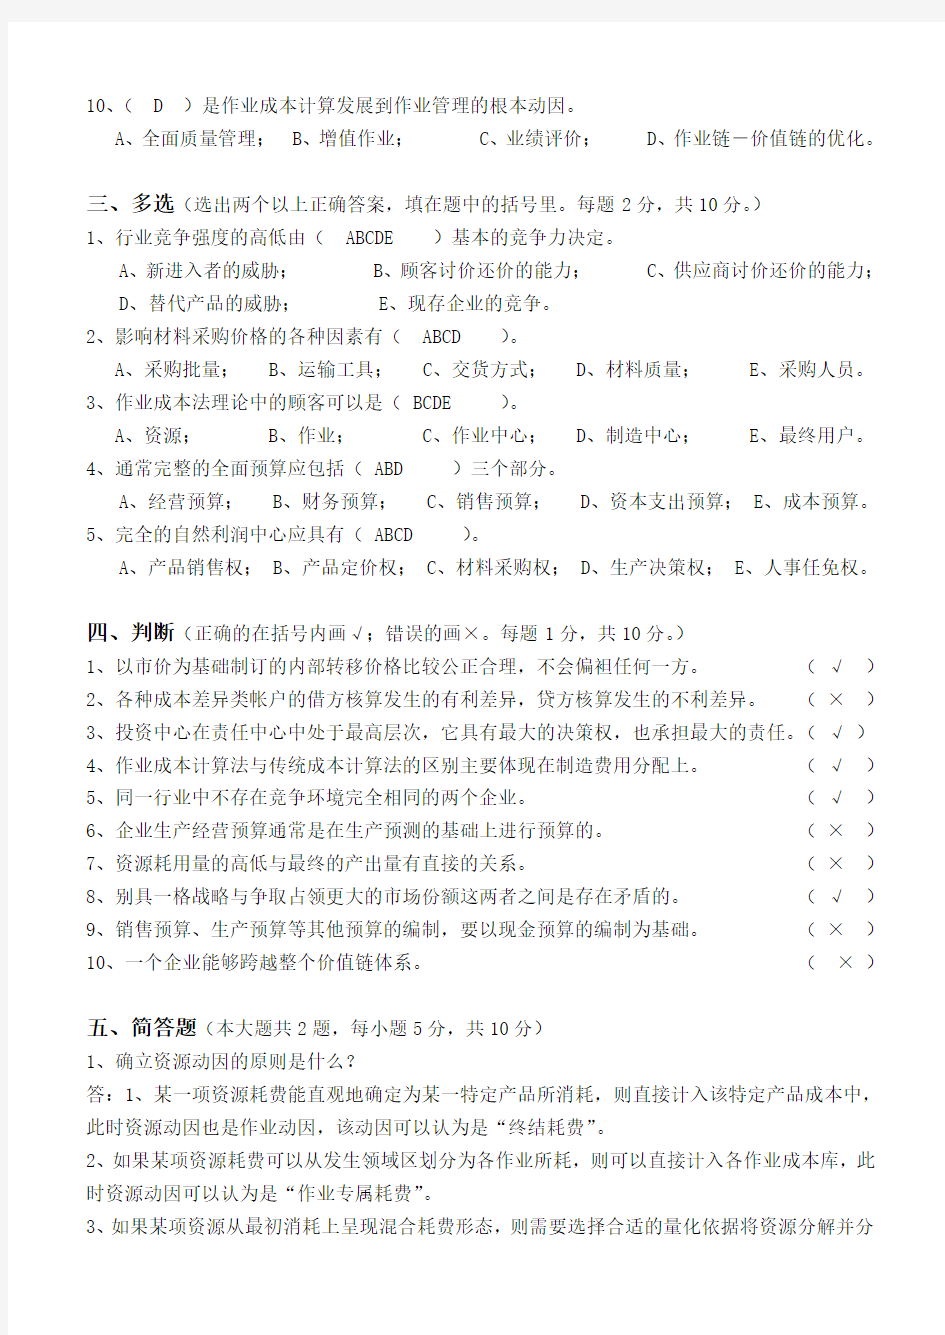 江南大学2013下半年管理会计第三阶段测试及答案